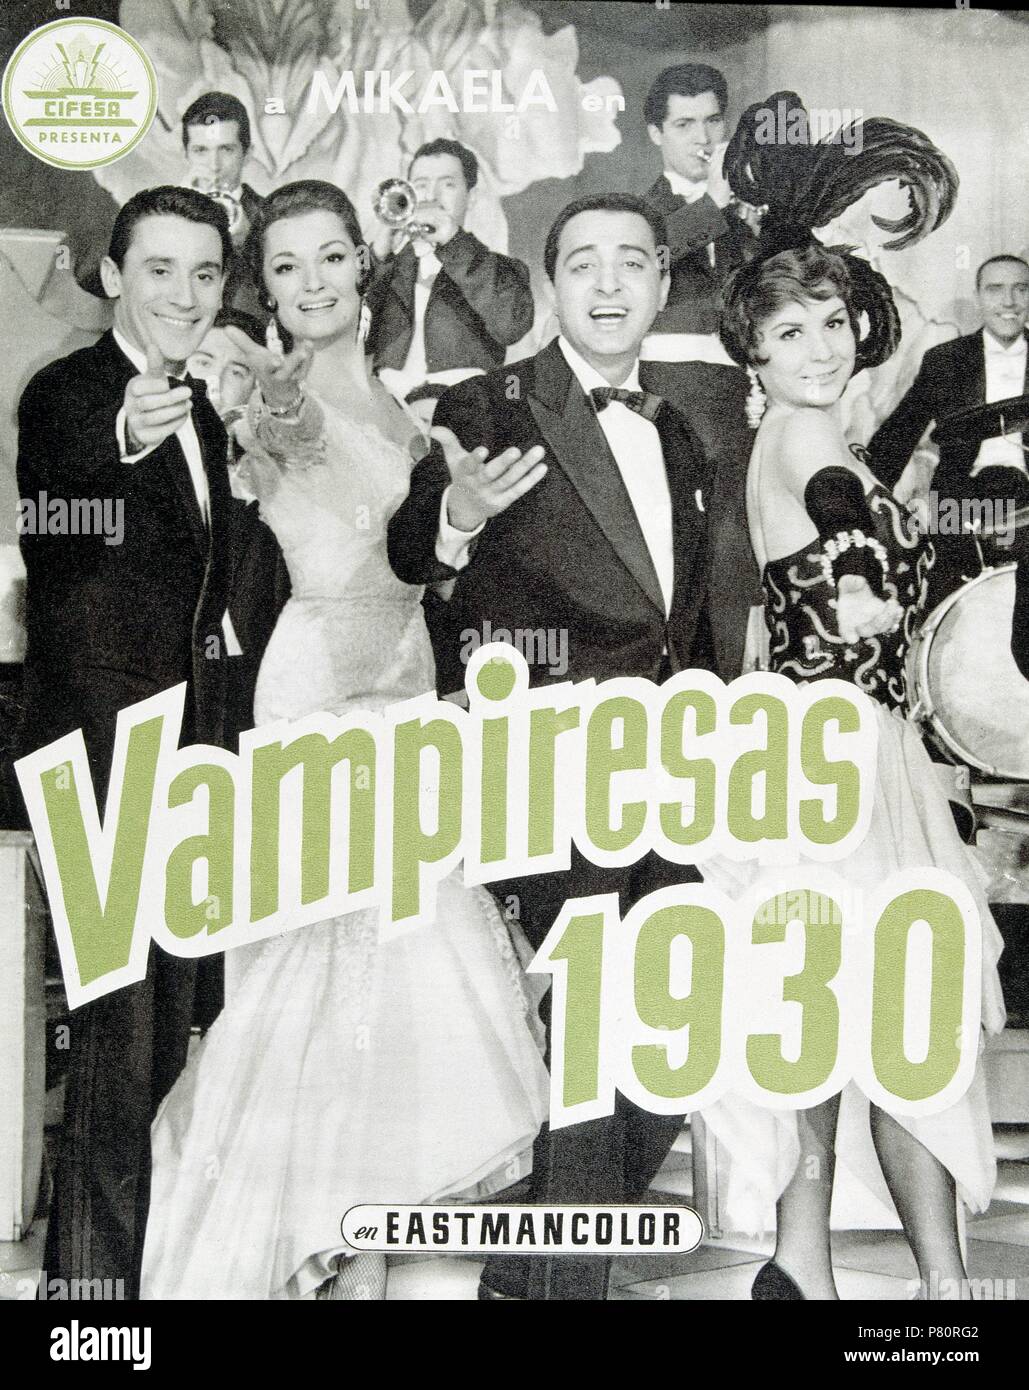 Cartel de la película ' Vampiresas '. DIrector Jesus Franco. Mikaela / Micaela Rodríguez Cuesta con Lina Morgan y Antonio Ozores. 1961. Stock Photo